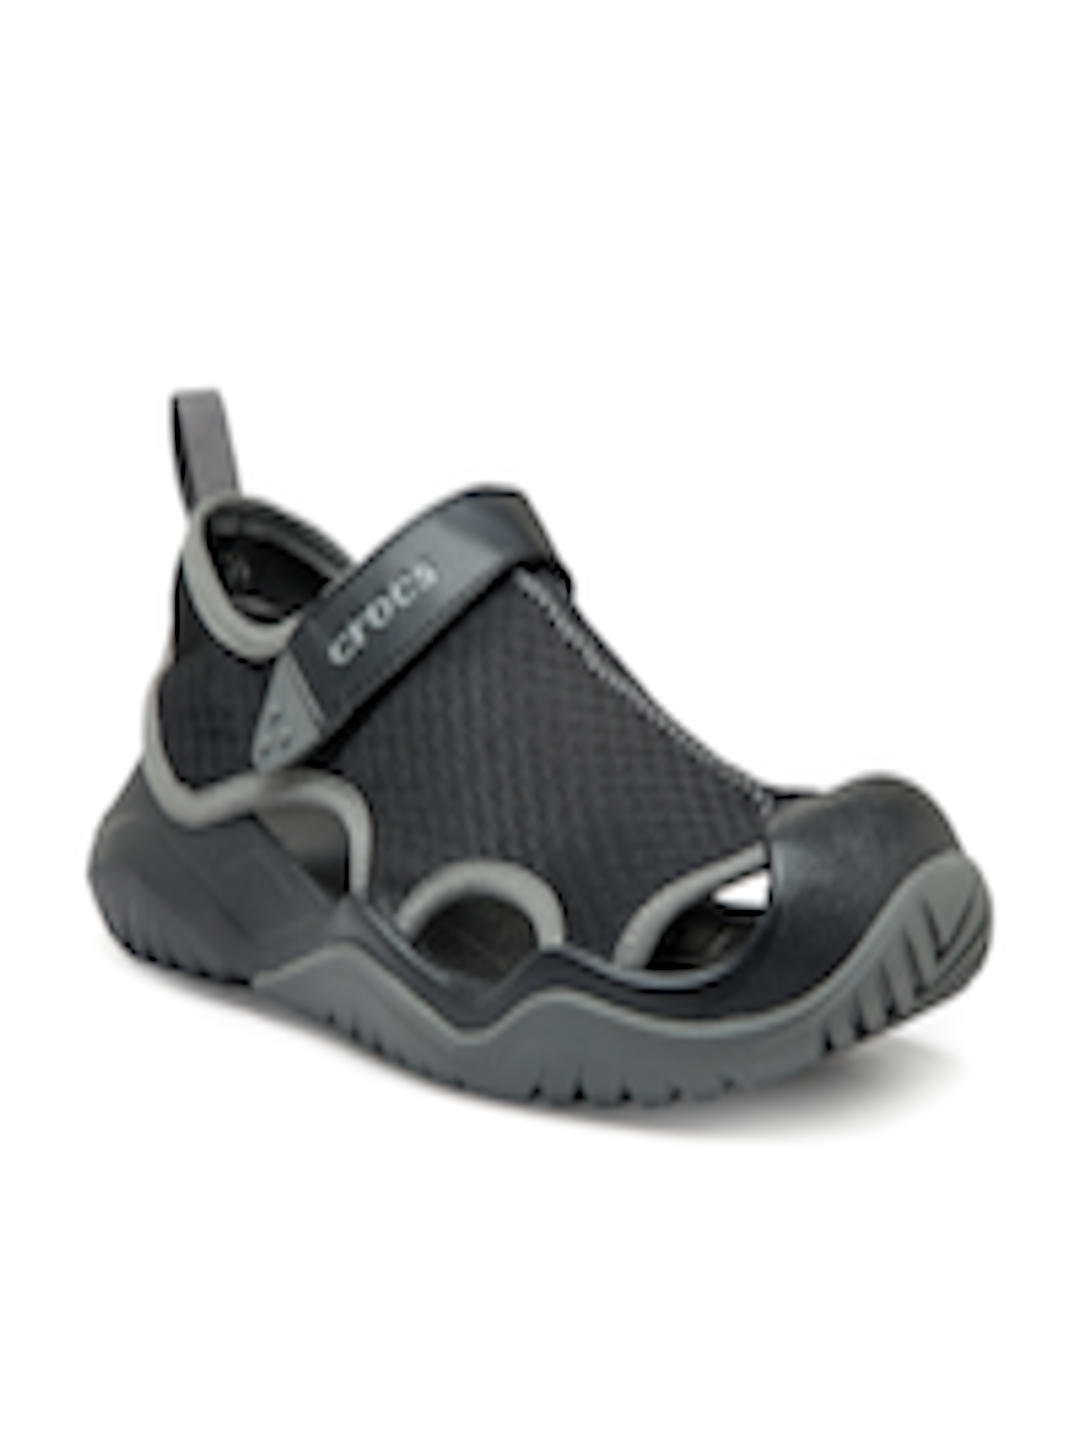 Buy Crocs Swiftwater Men Black Comfort Sandals - Sandals for Men ...